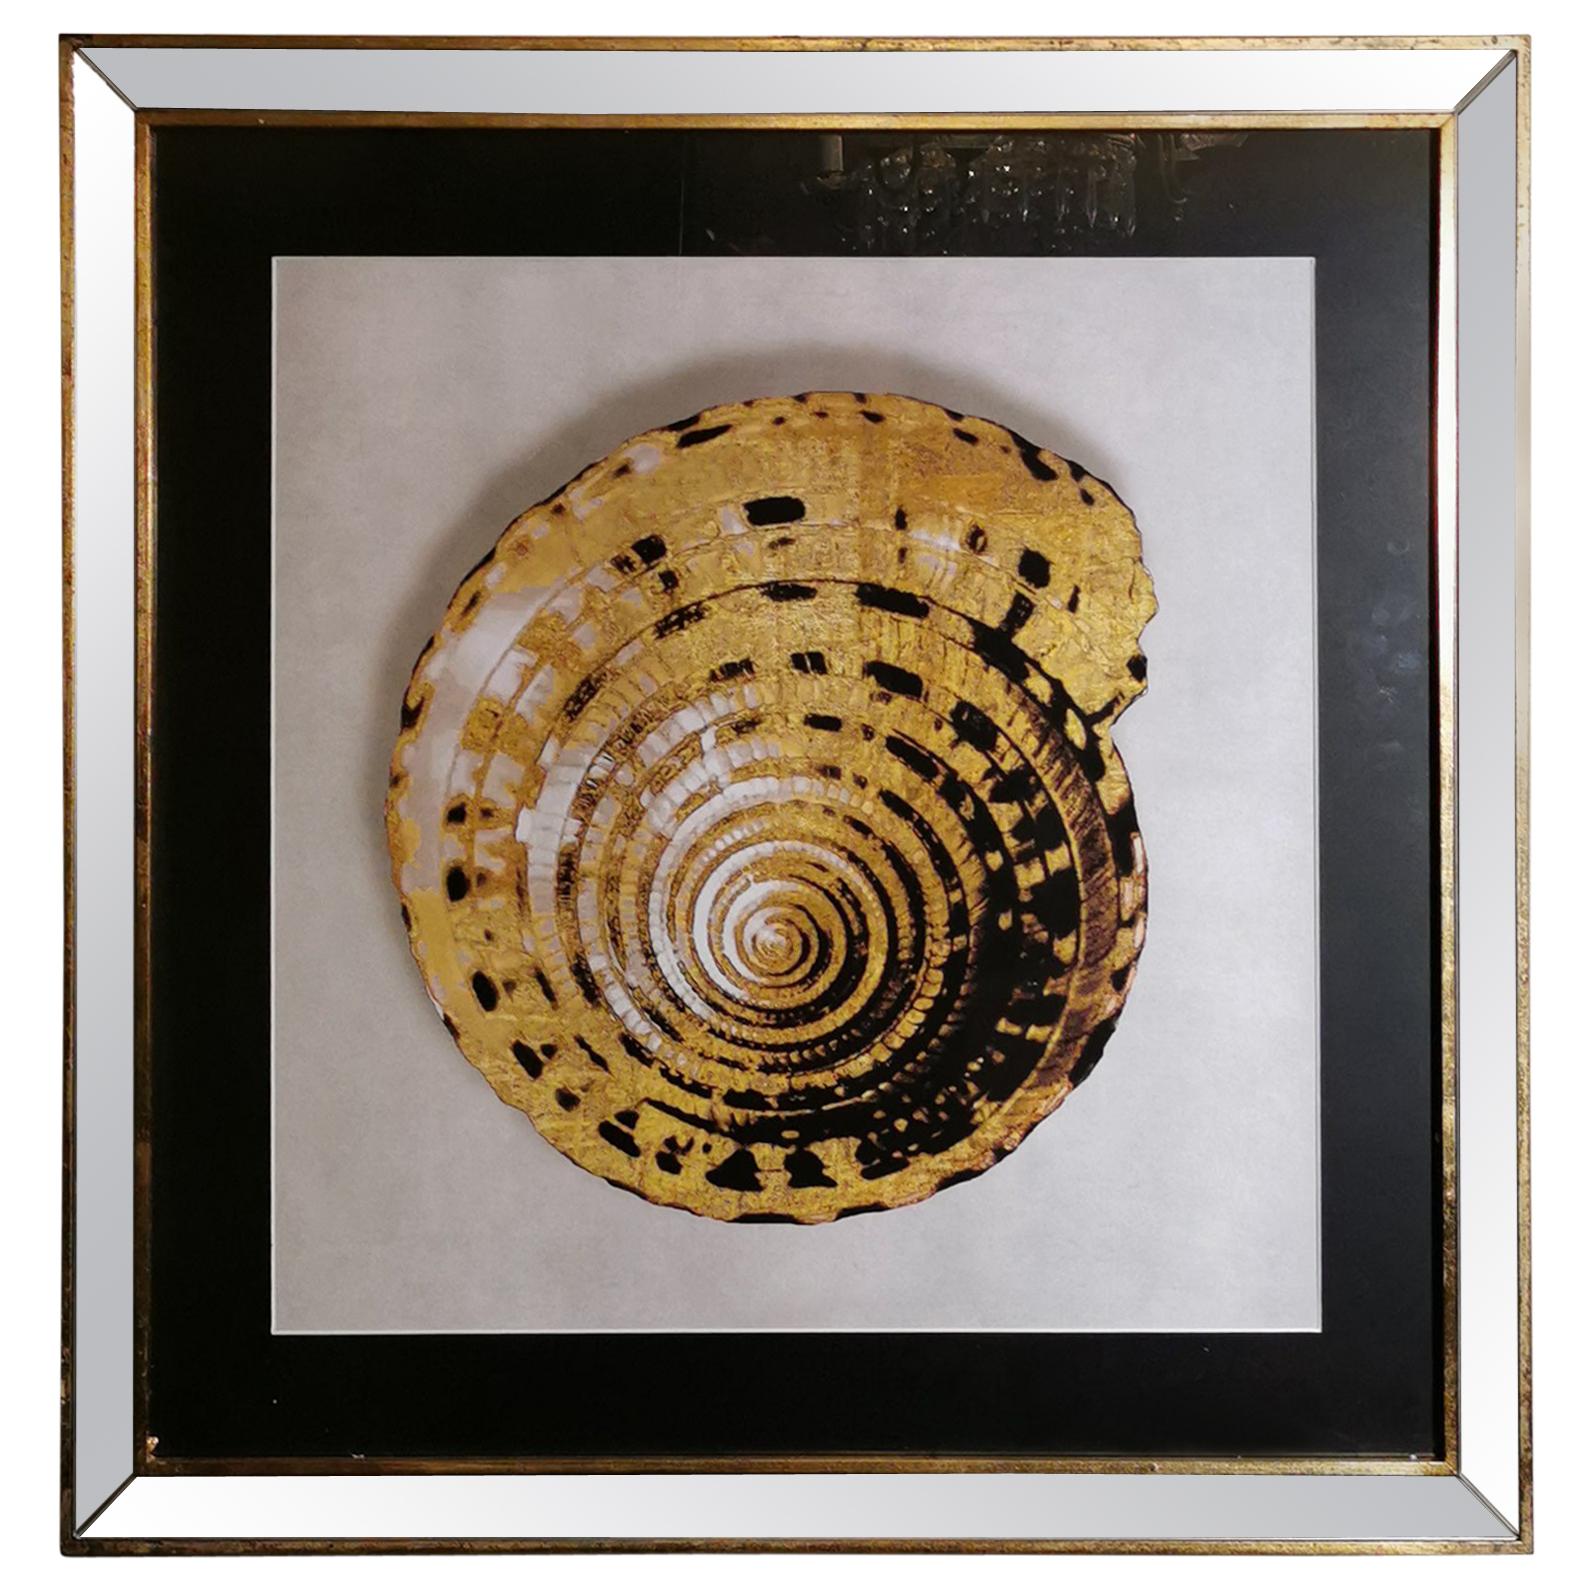 Impression coquillage doré italienne contemporaine, cadre en bois doré avec miroir, lot de 4